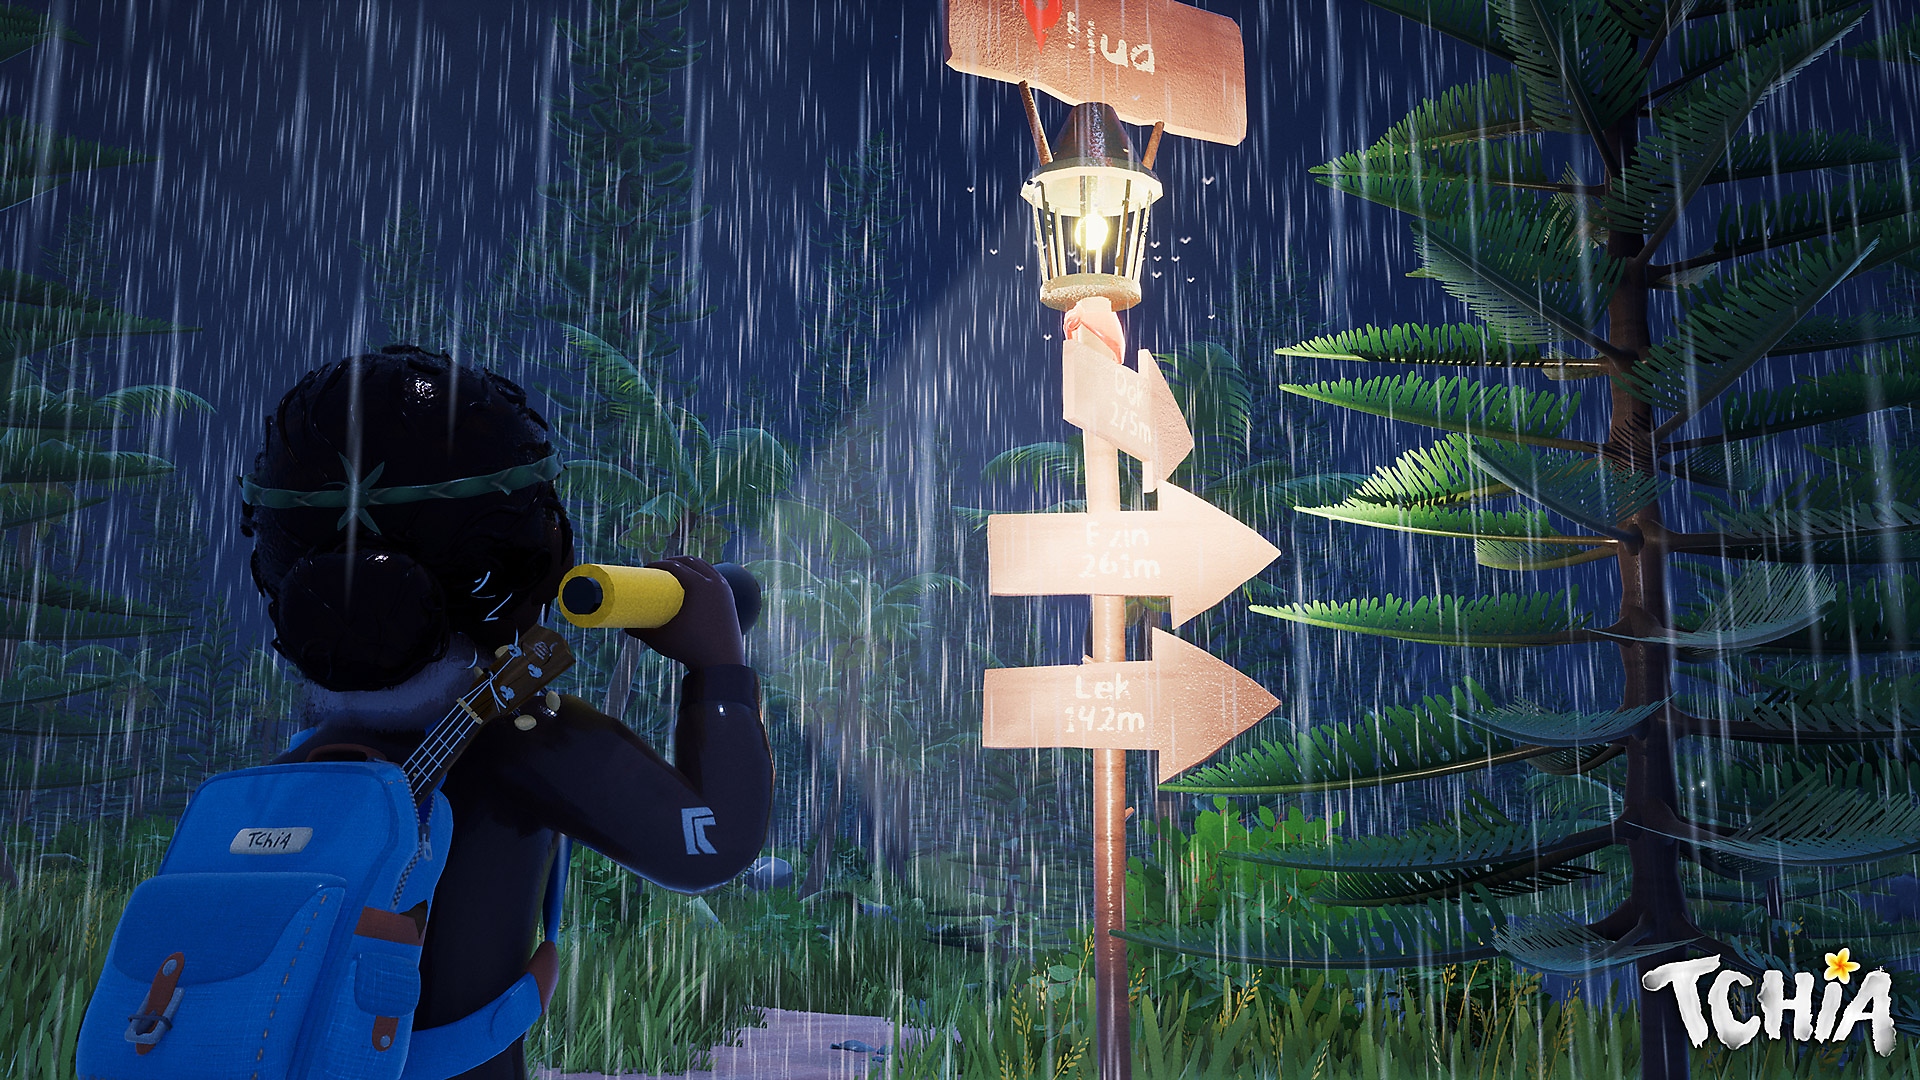 《Tchia》截屏展示了一名角色站在雨中看着路标 